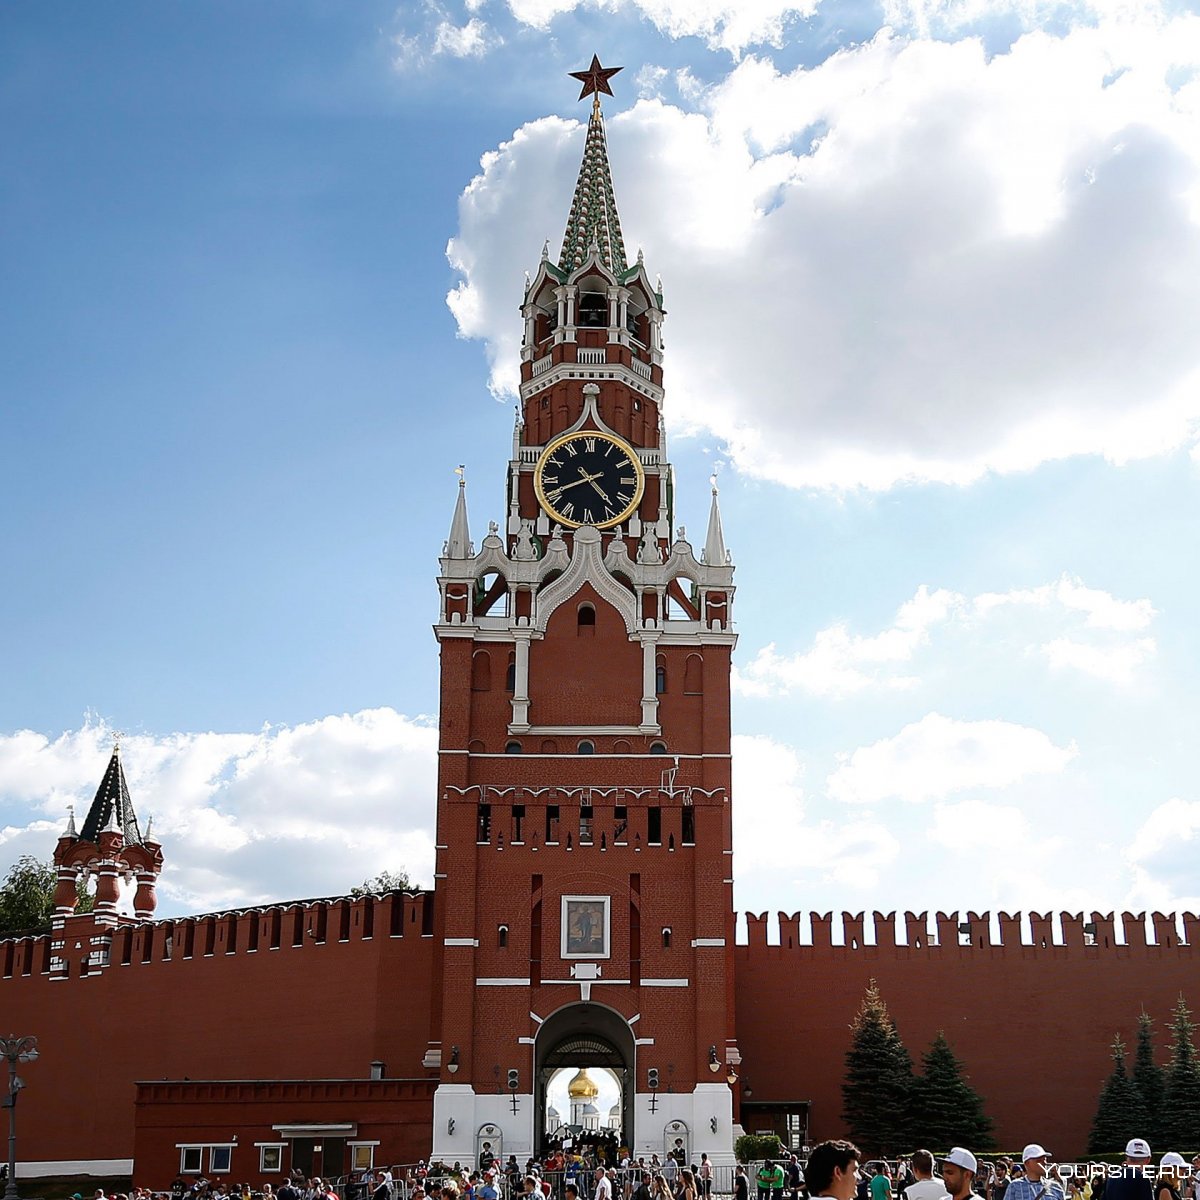 Фроловская башня Кремля